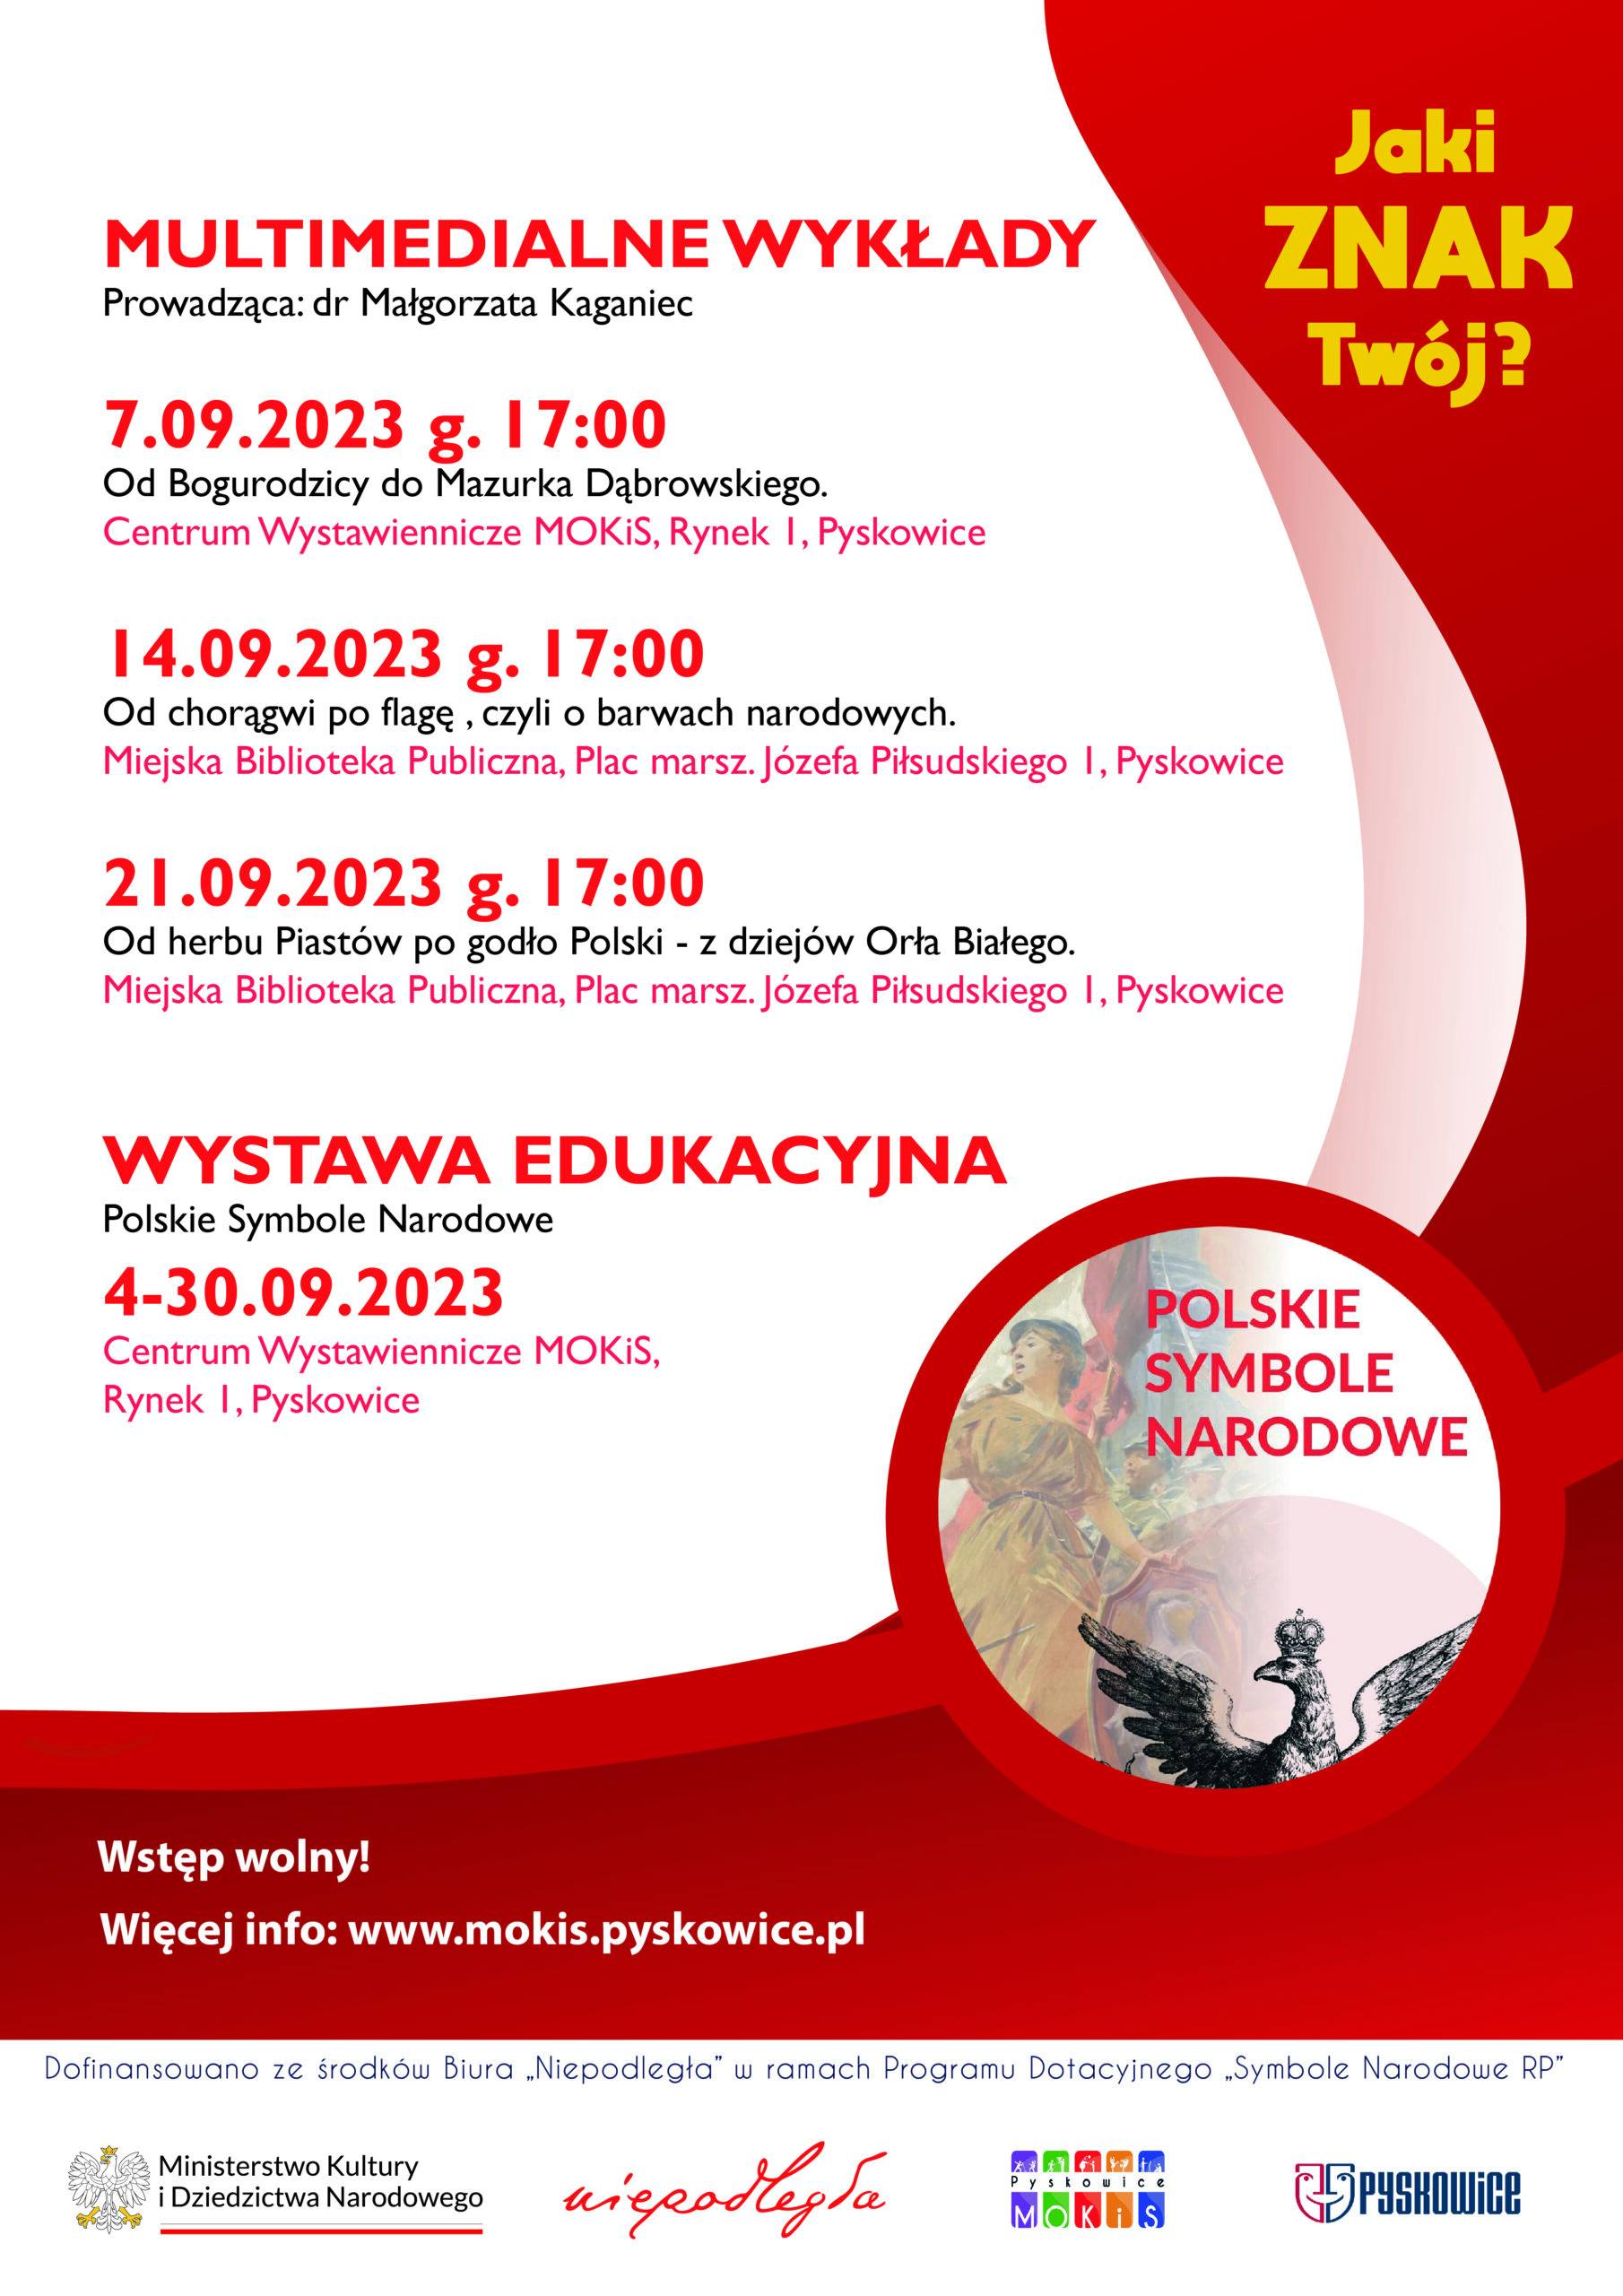 Plakat promujący wykłady. Czerwono- biała kolorystyka, na środku tekst z datami wykładów